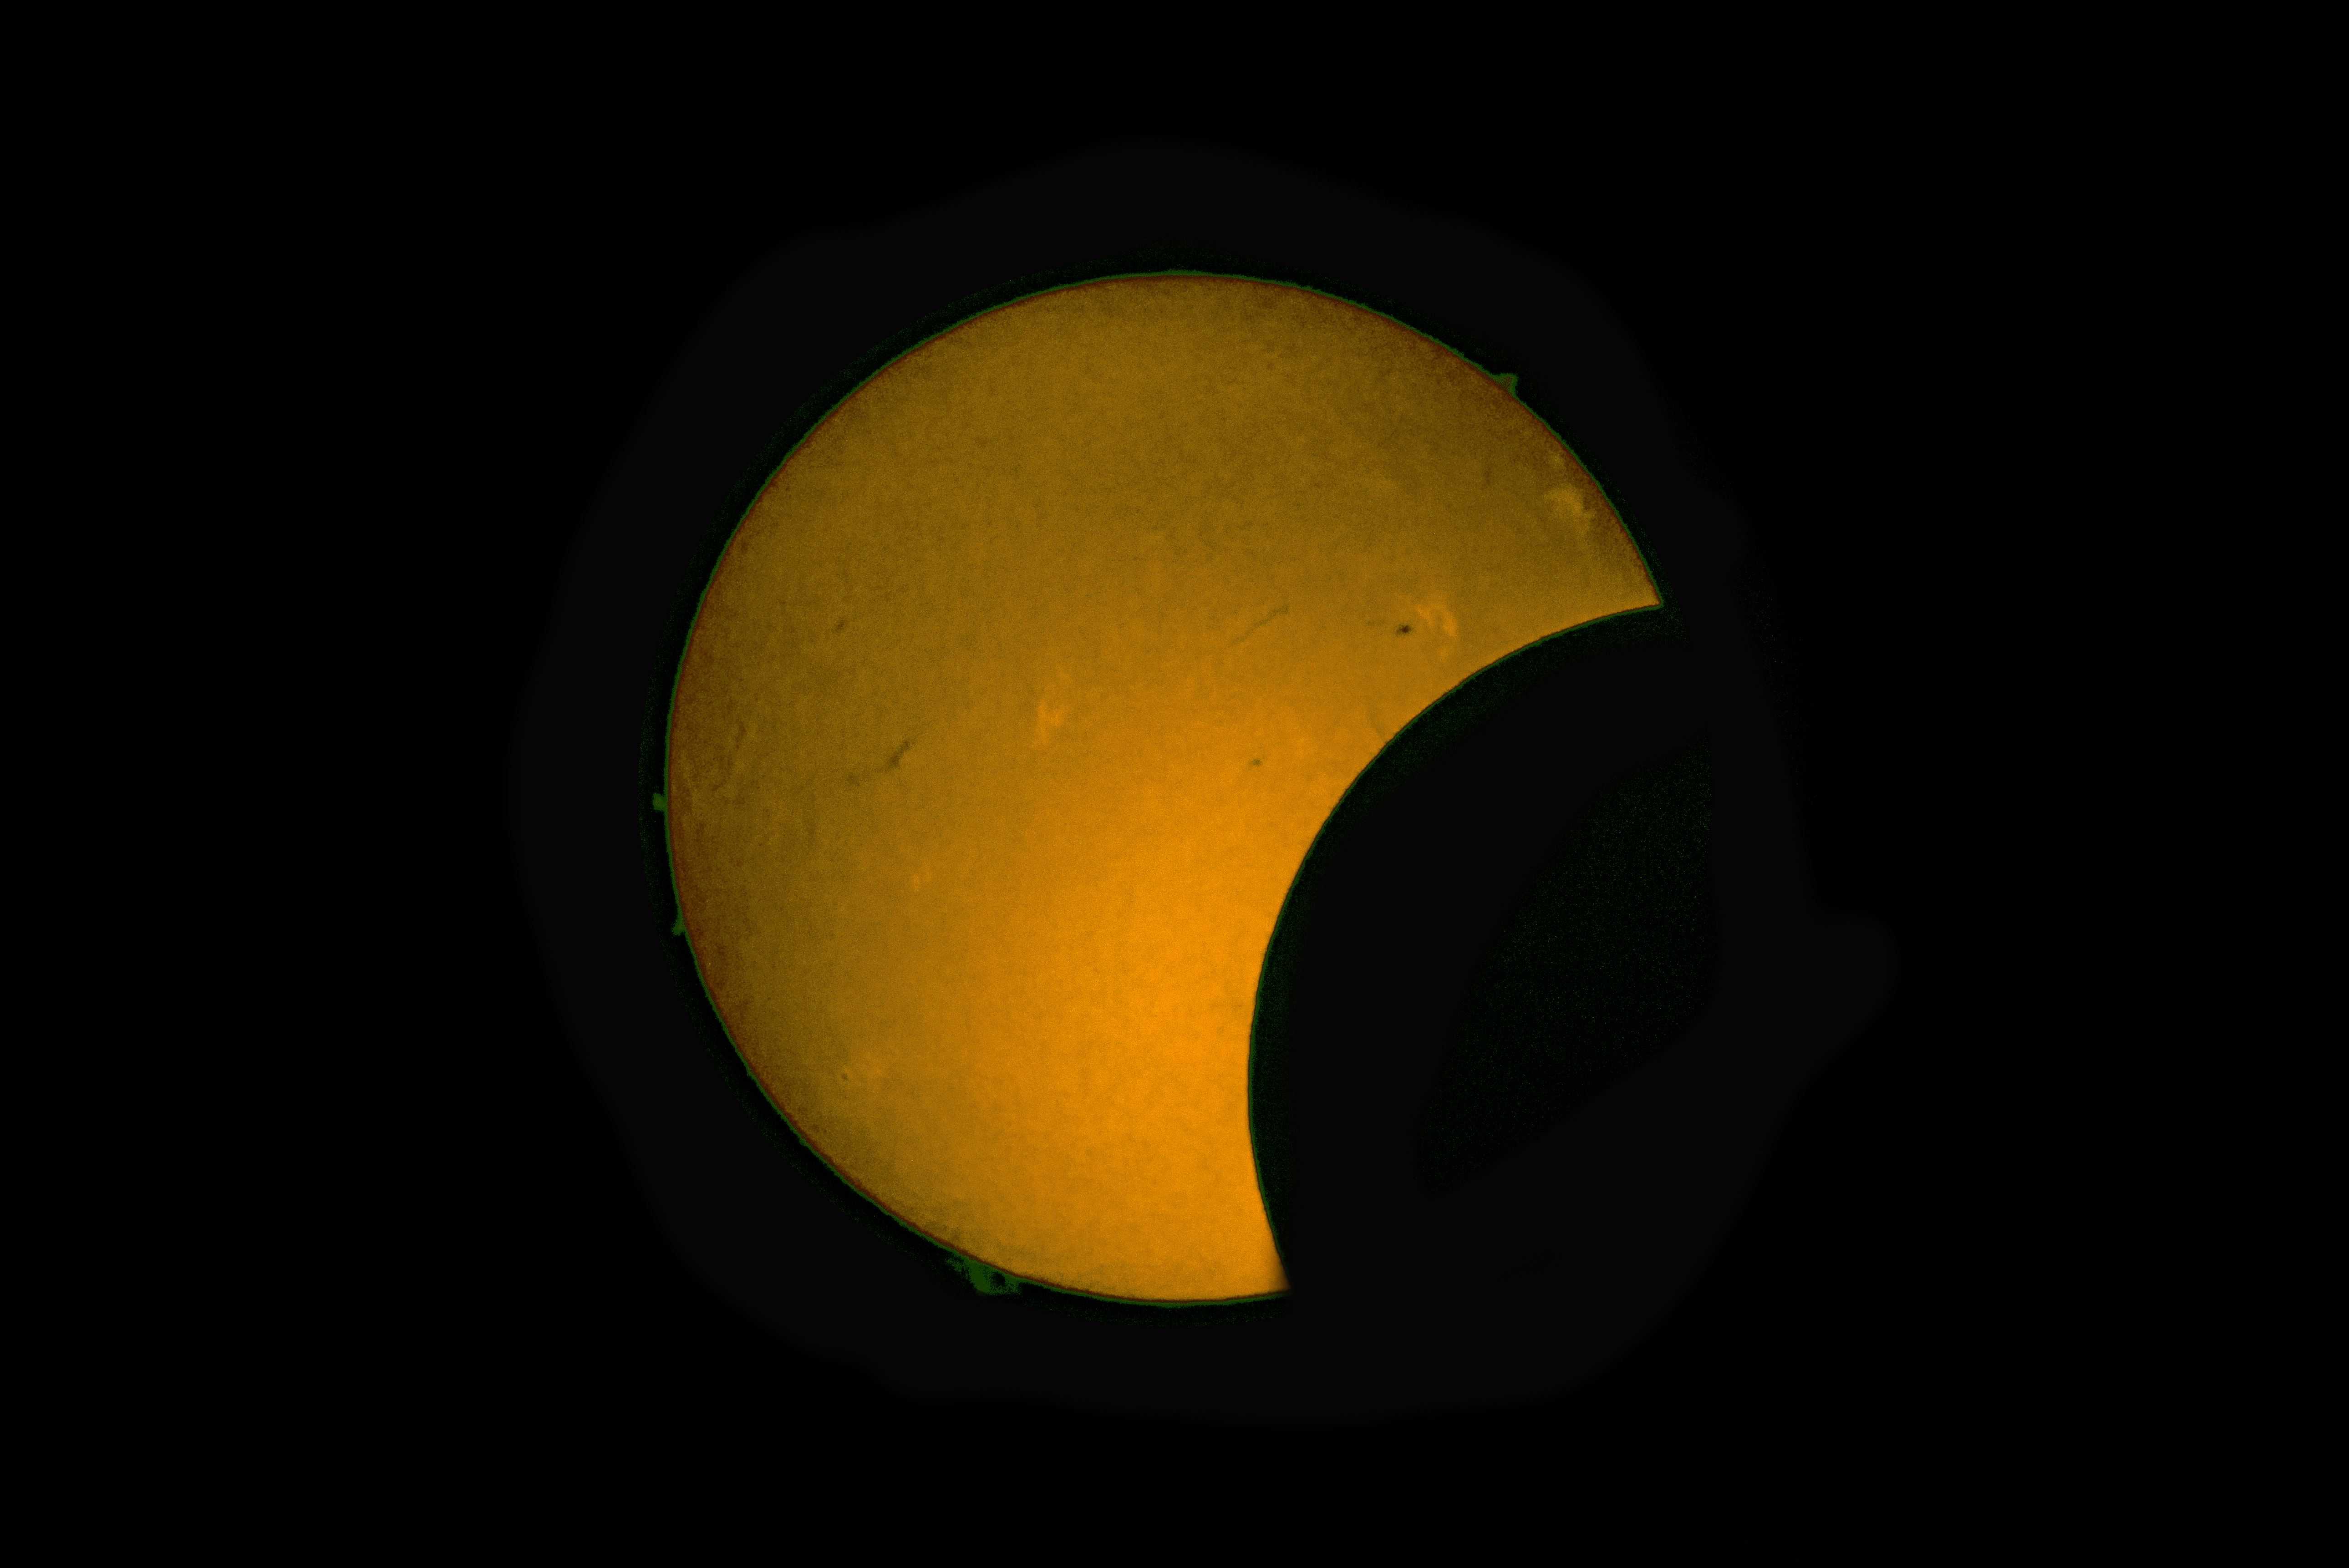 En la imagen se pueden apreciar diversos elementos de la cromosfera solar junto al borde la Luna, incluso se logran ver algunas llamaradas solares coloreadas en verde.